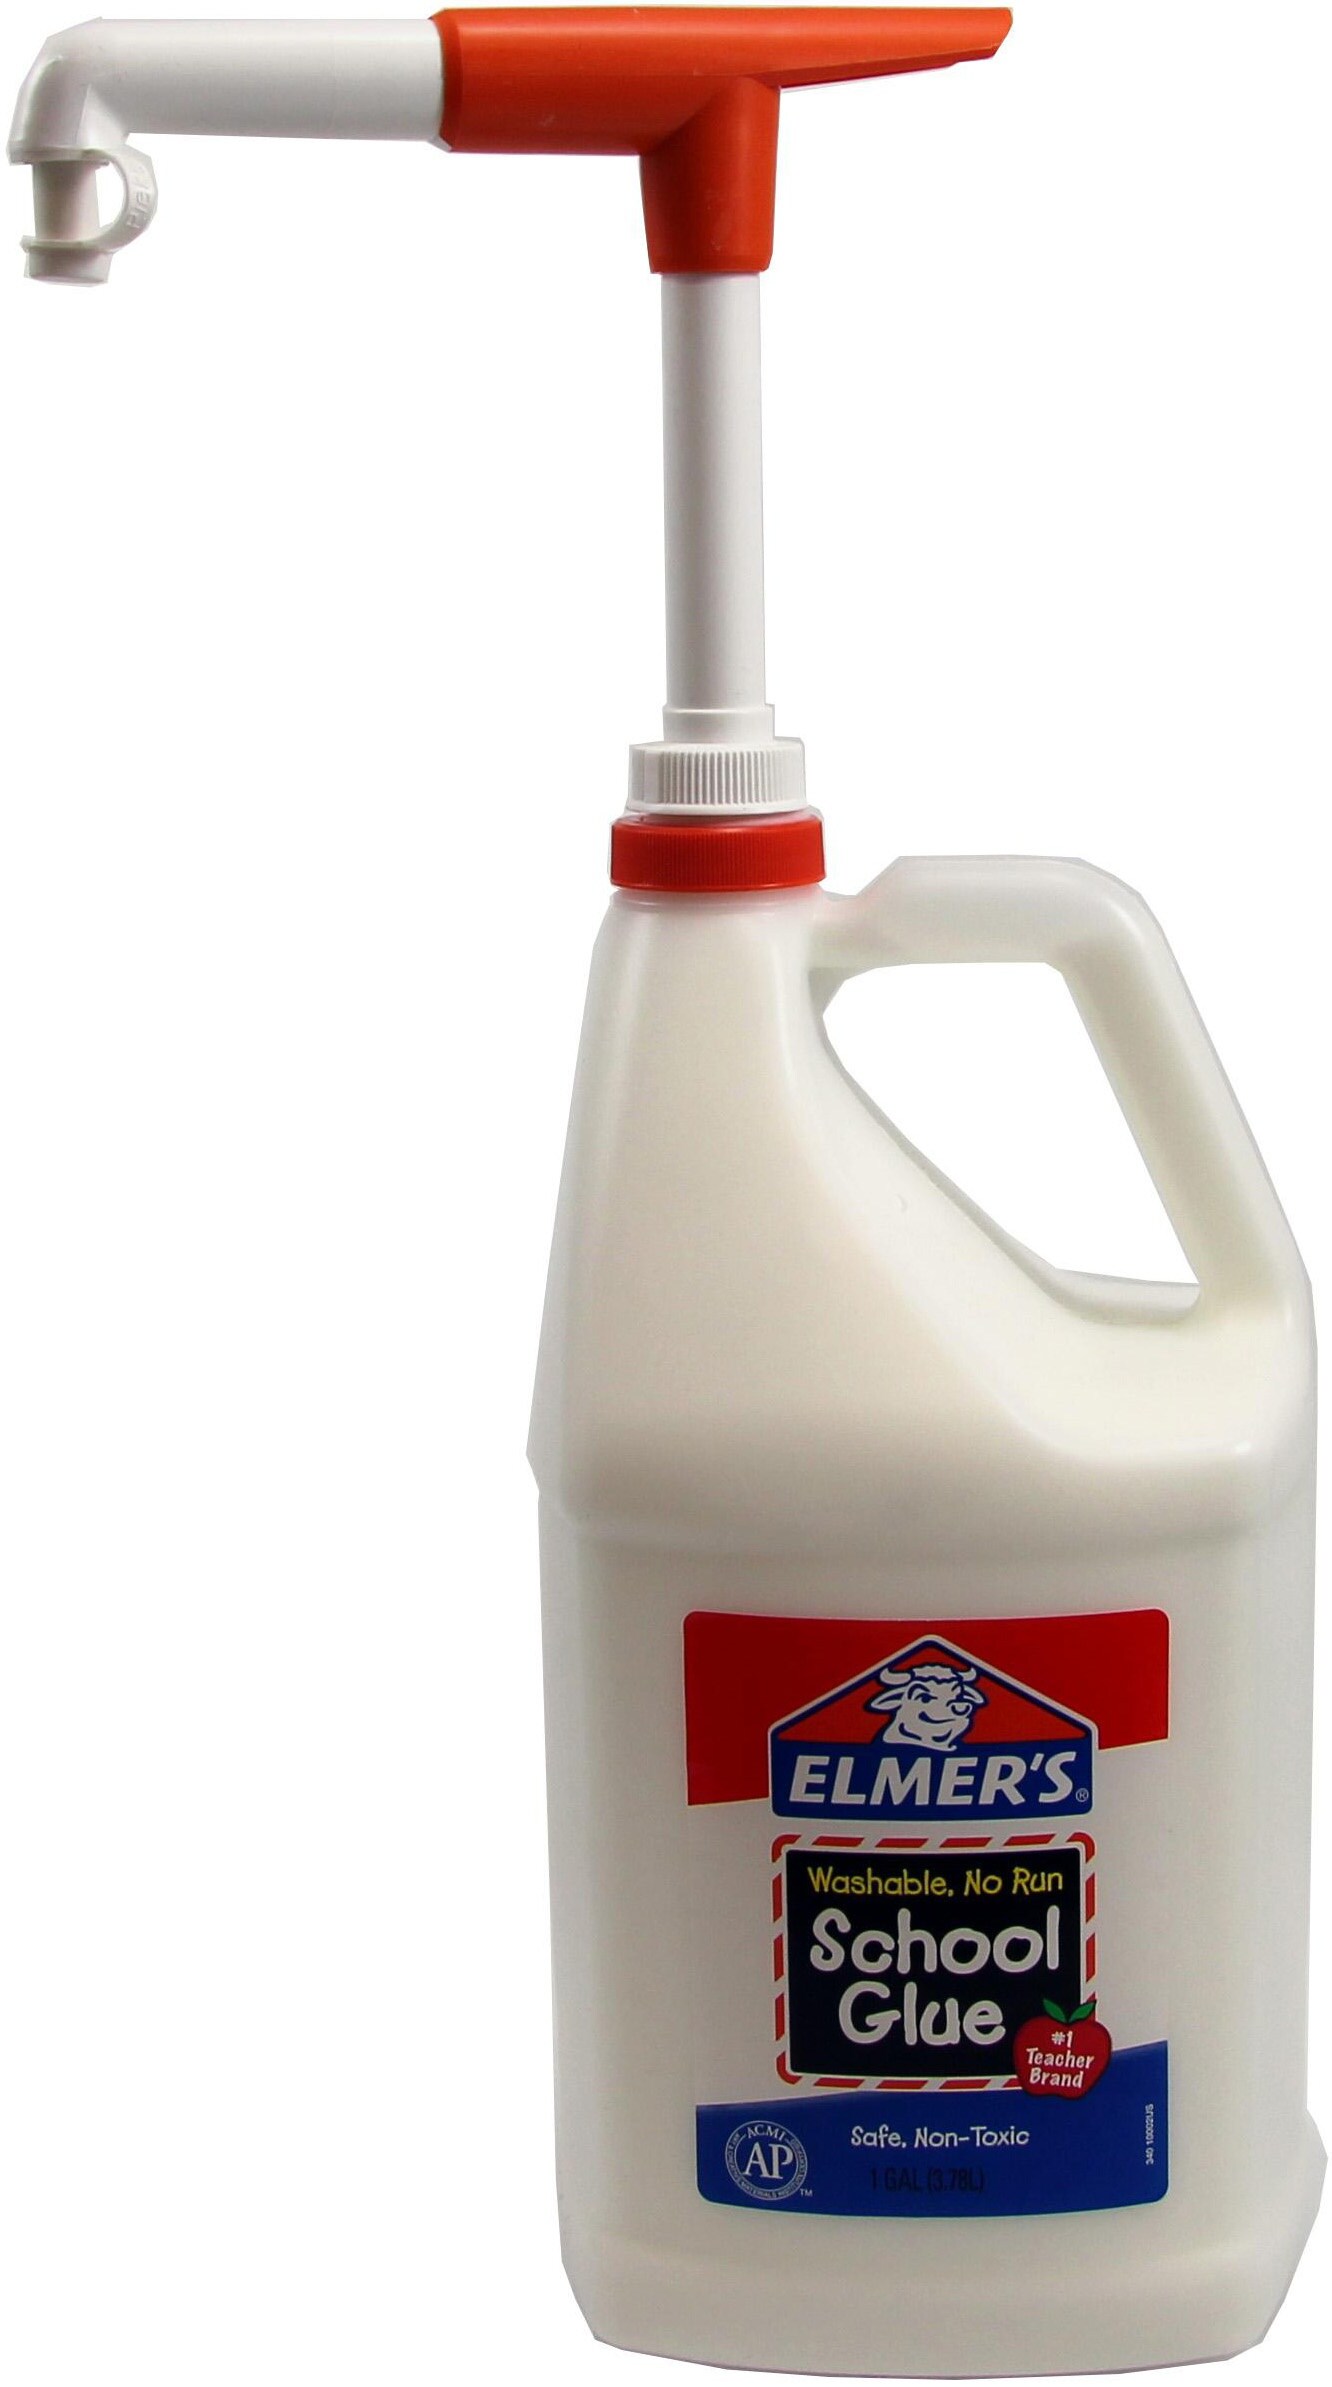 Elmer's Washable School Glue, 1 gal, Dries Clear